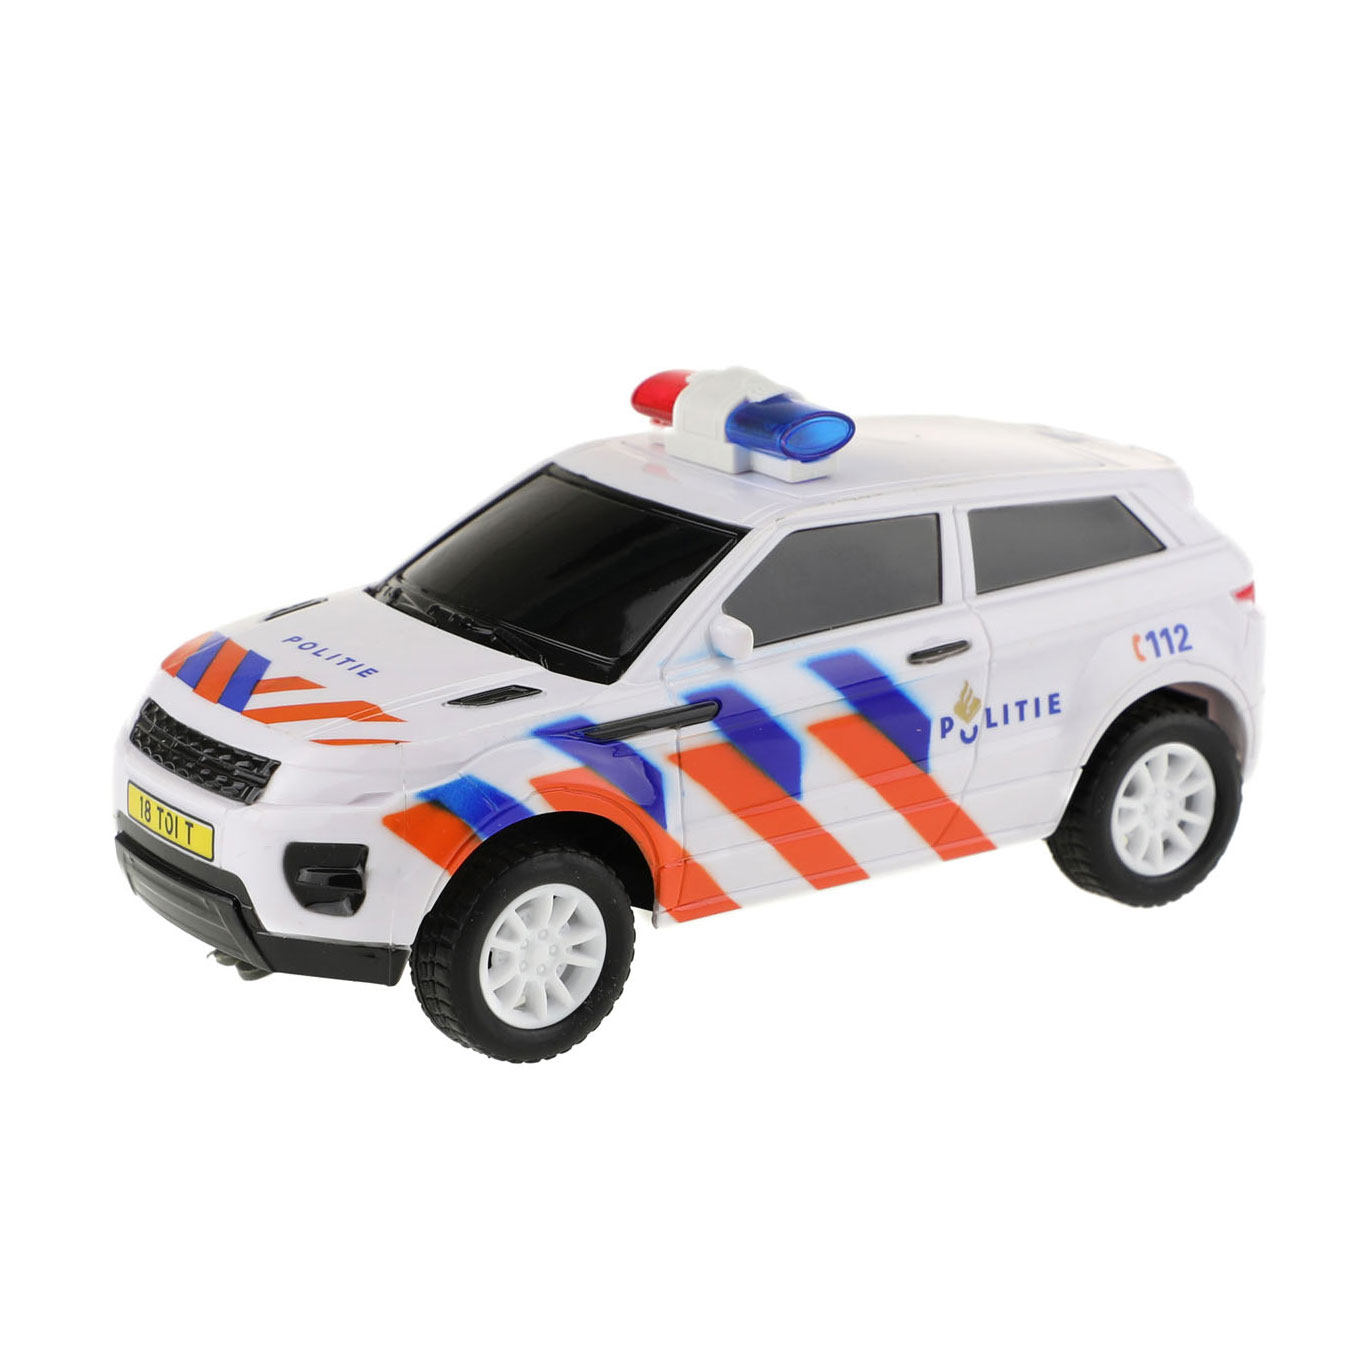 Alternatief als resultaat Wakker worden RC Police car, 16cm | Thimble Toys